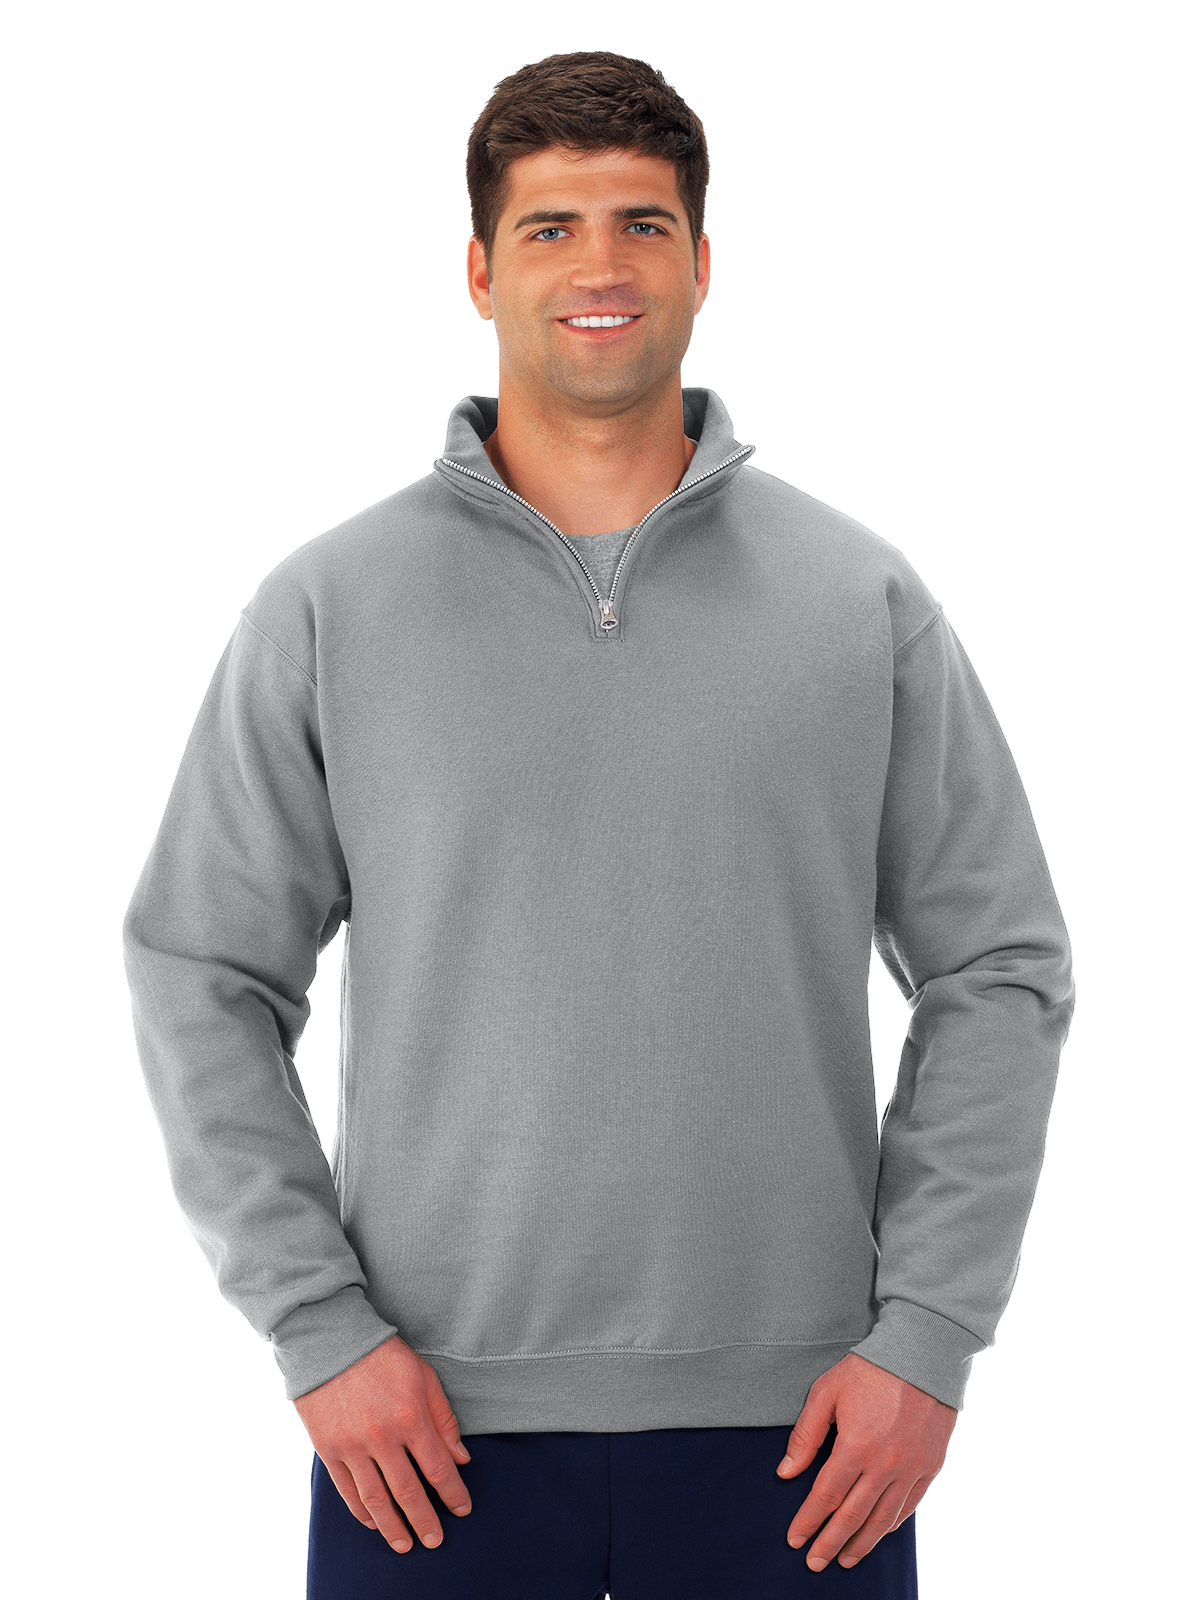 Nublend 1/4 Zip Cadet Collar Sweatshirt – Quality Sportswear